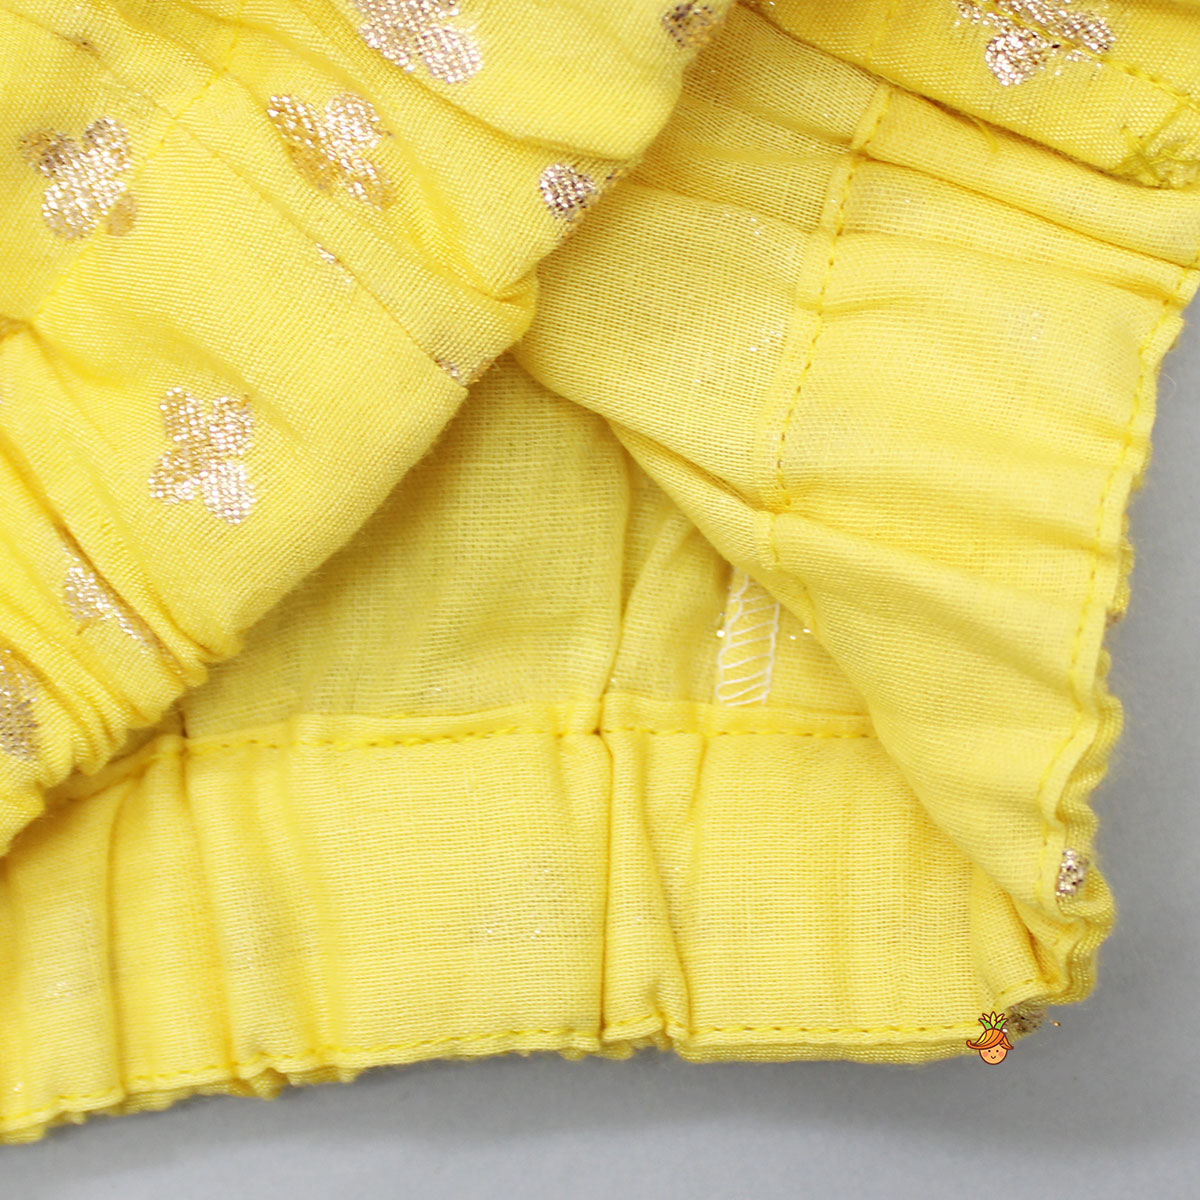 Ethnic Embroidered Yellow Top And Lehenga